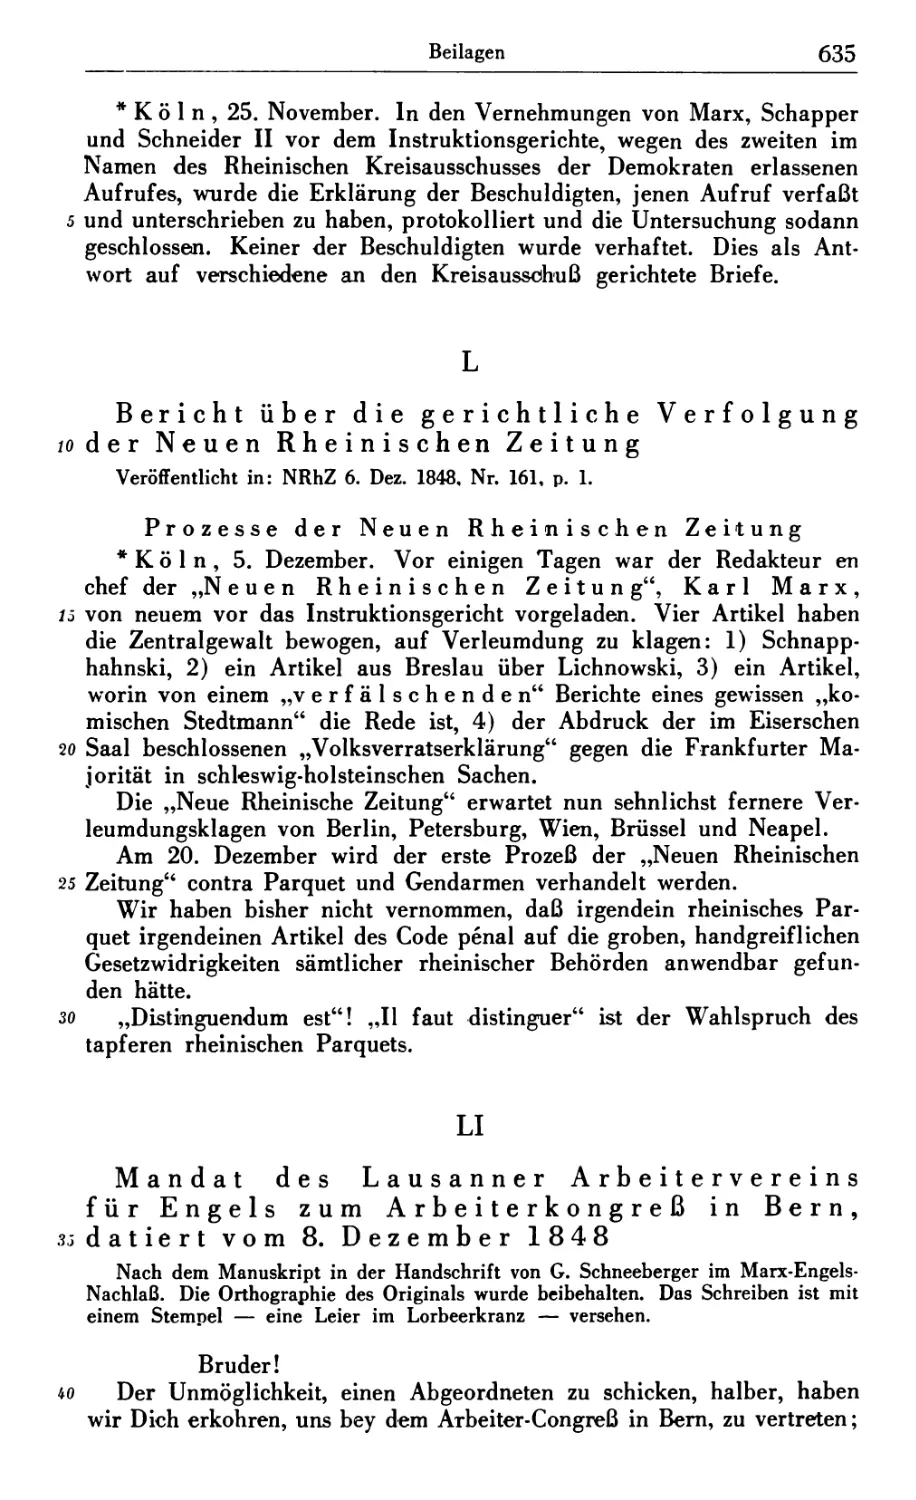 L. Bericht über die gerichtliche Verfolgung der Neuen Rheinischen Zeitung
LI. Mandat des Lausanner Arbeitervereins für Engels zum Arbeiterkongreß in Bern, datiert vom 8. Dezömlber 1848